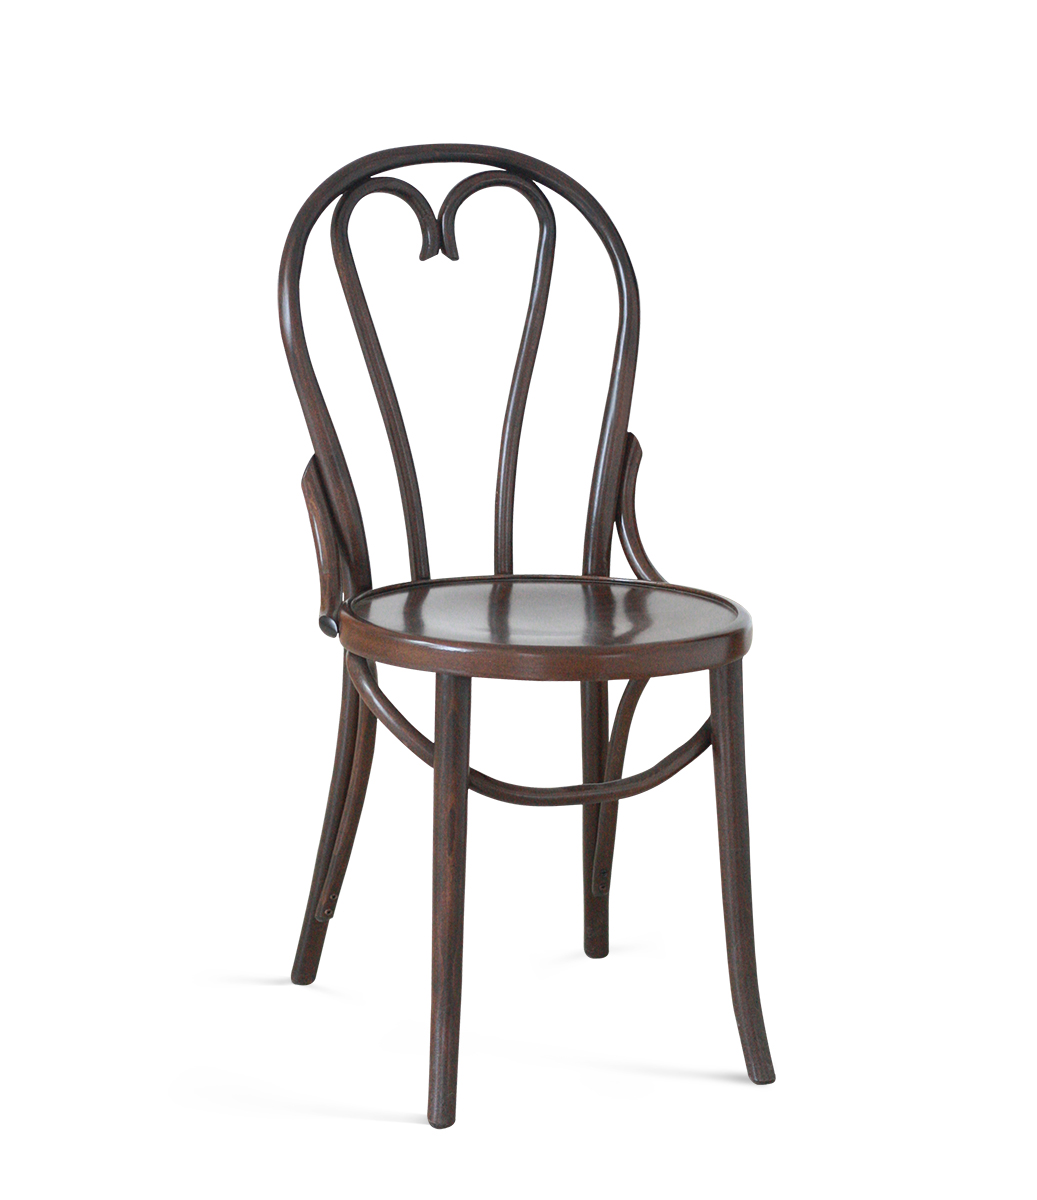 Chair 6018